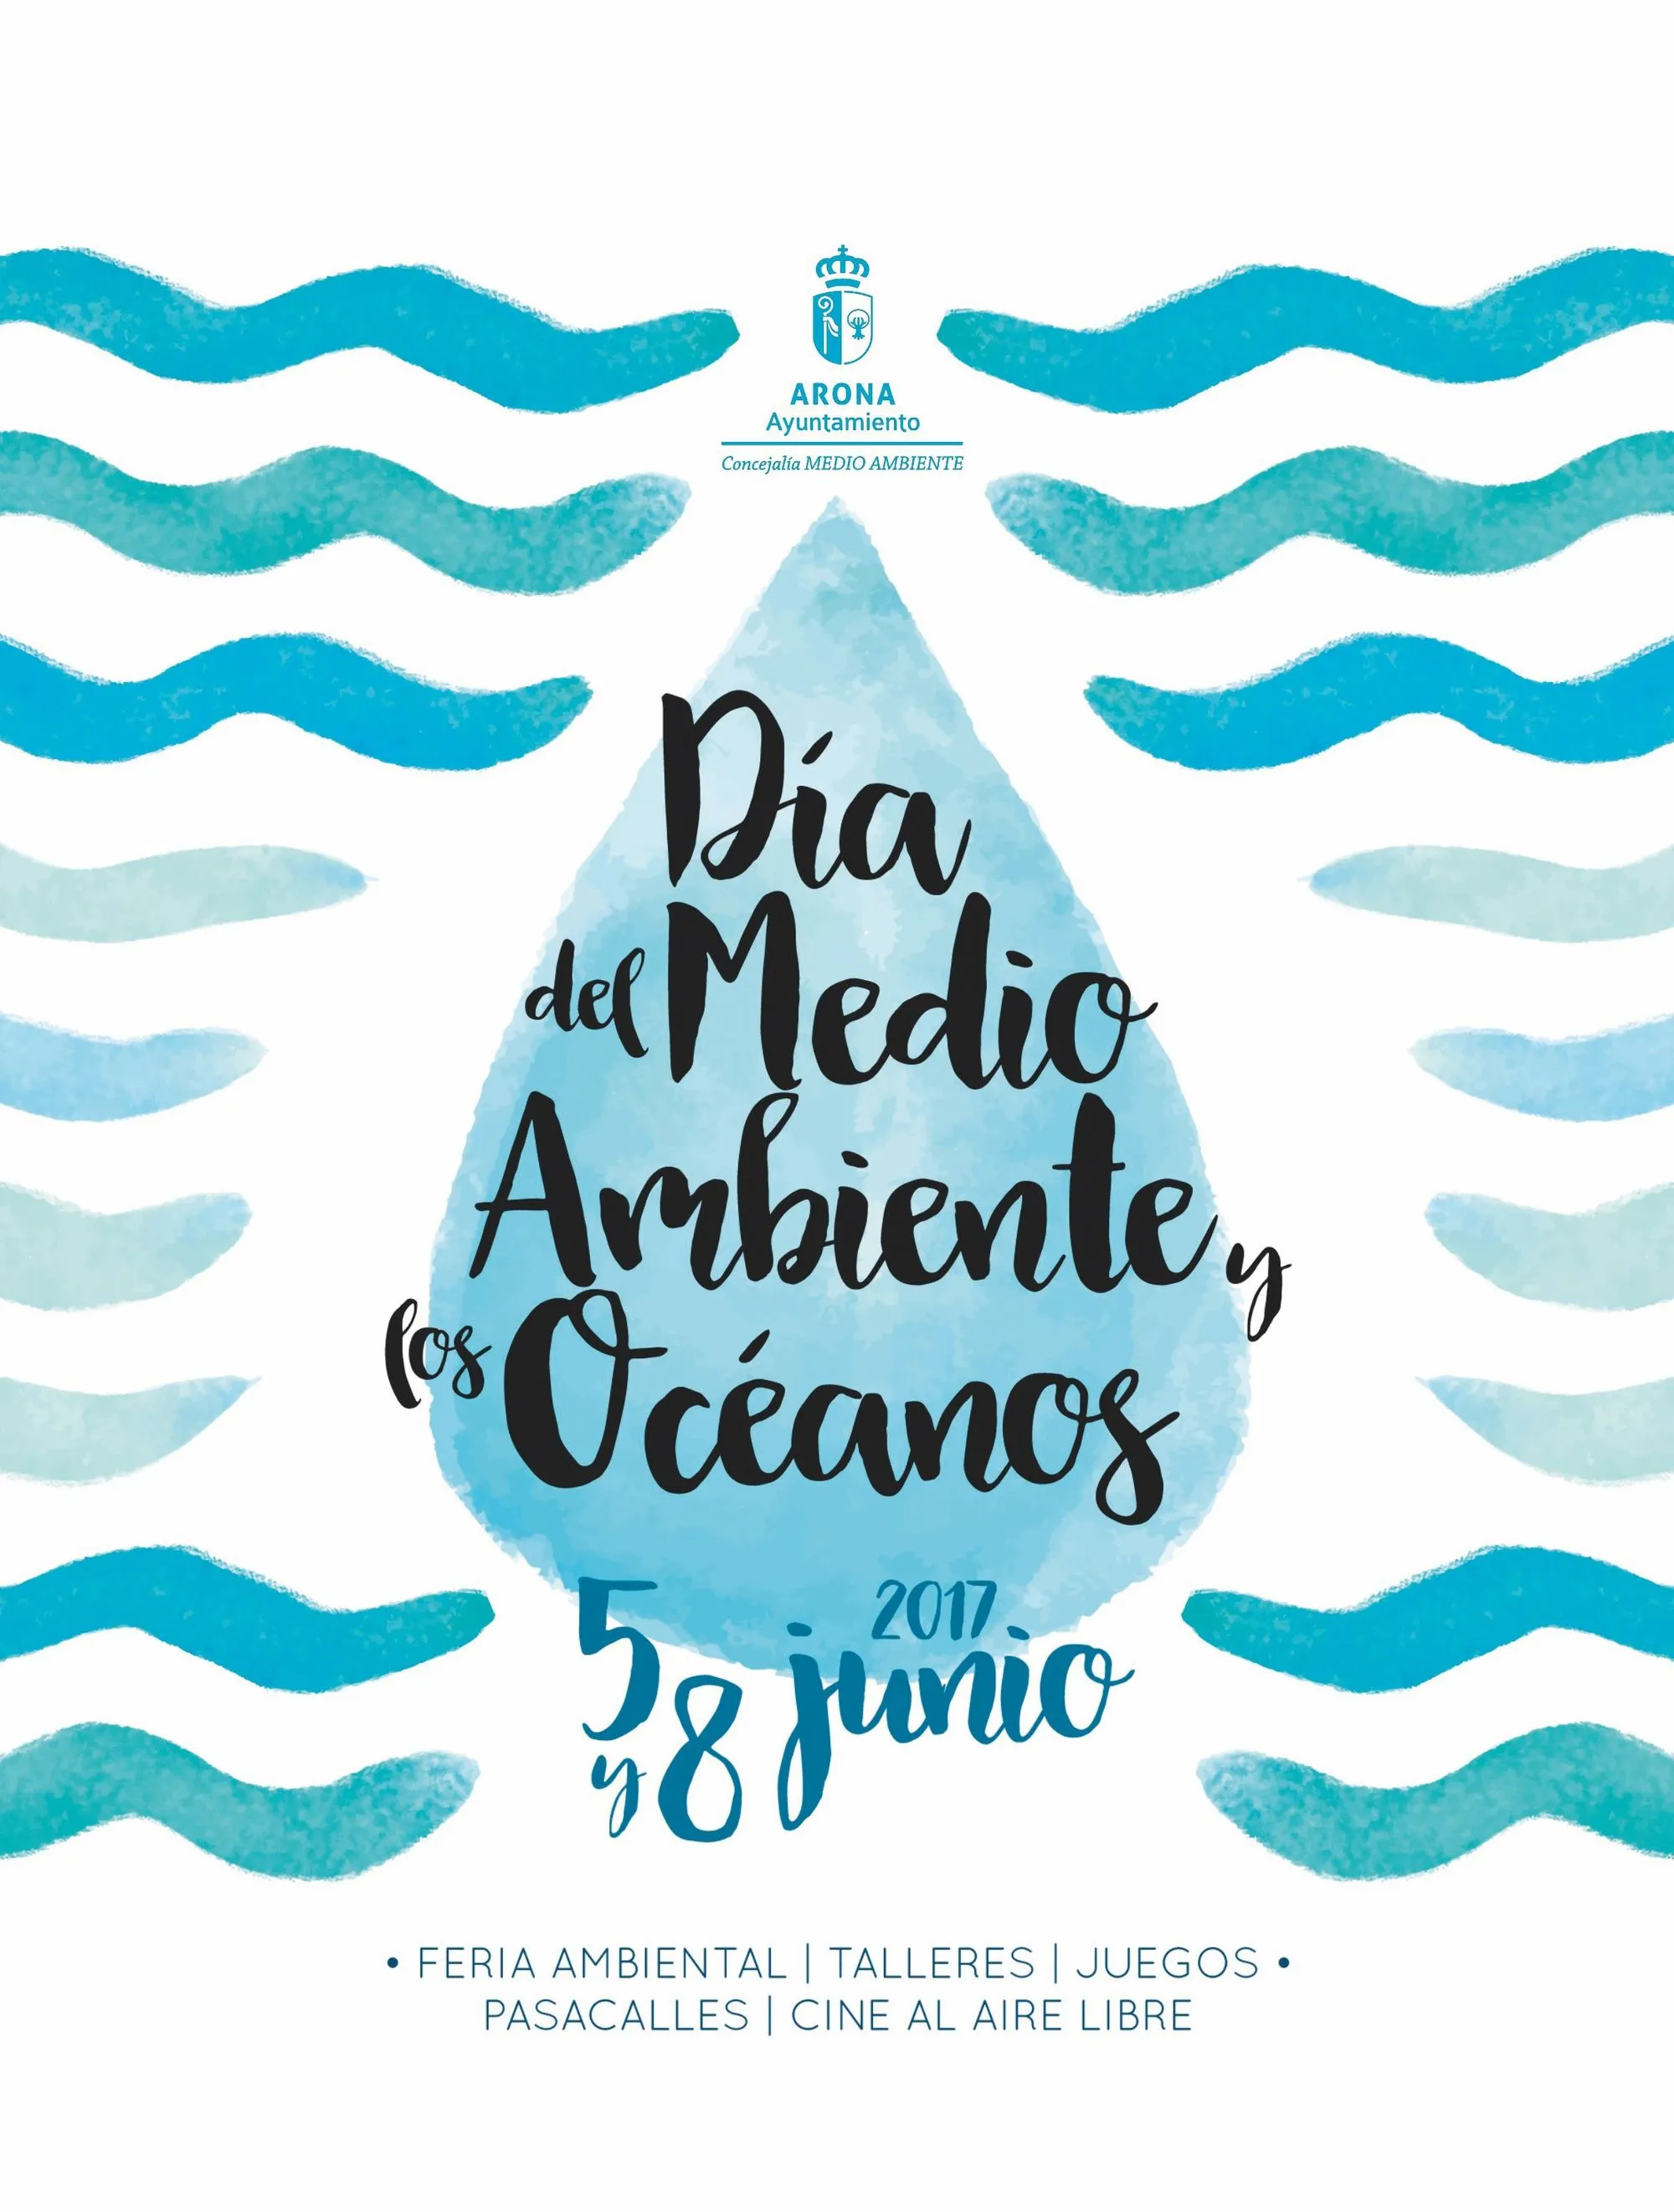 Cartel del Día del Medio Ambiente y los Océanos, 2017.